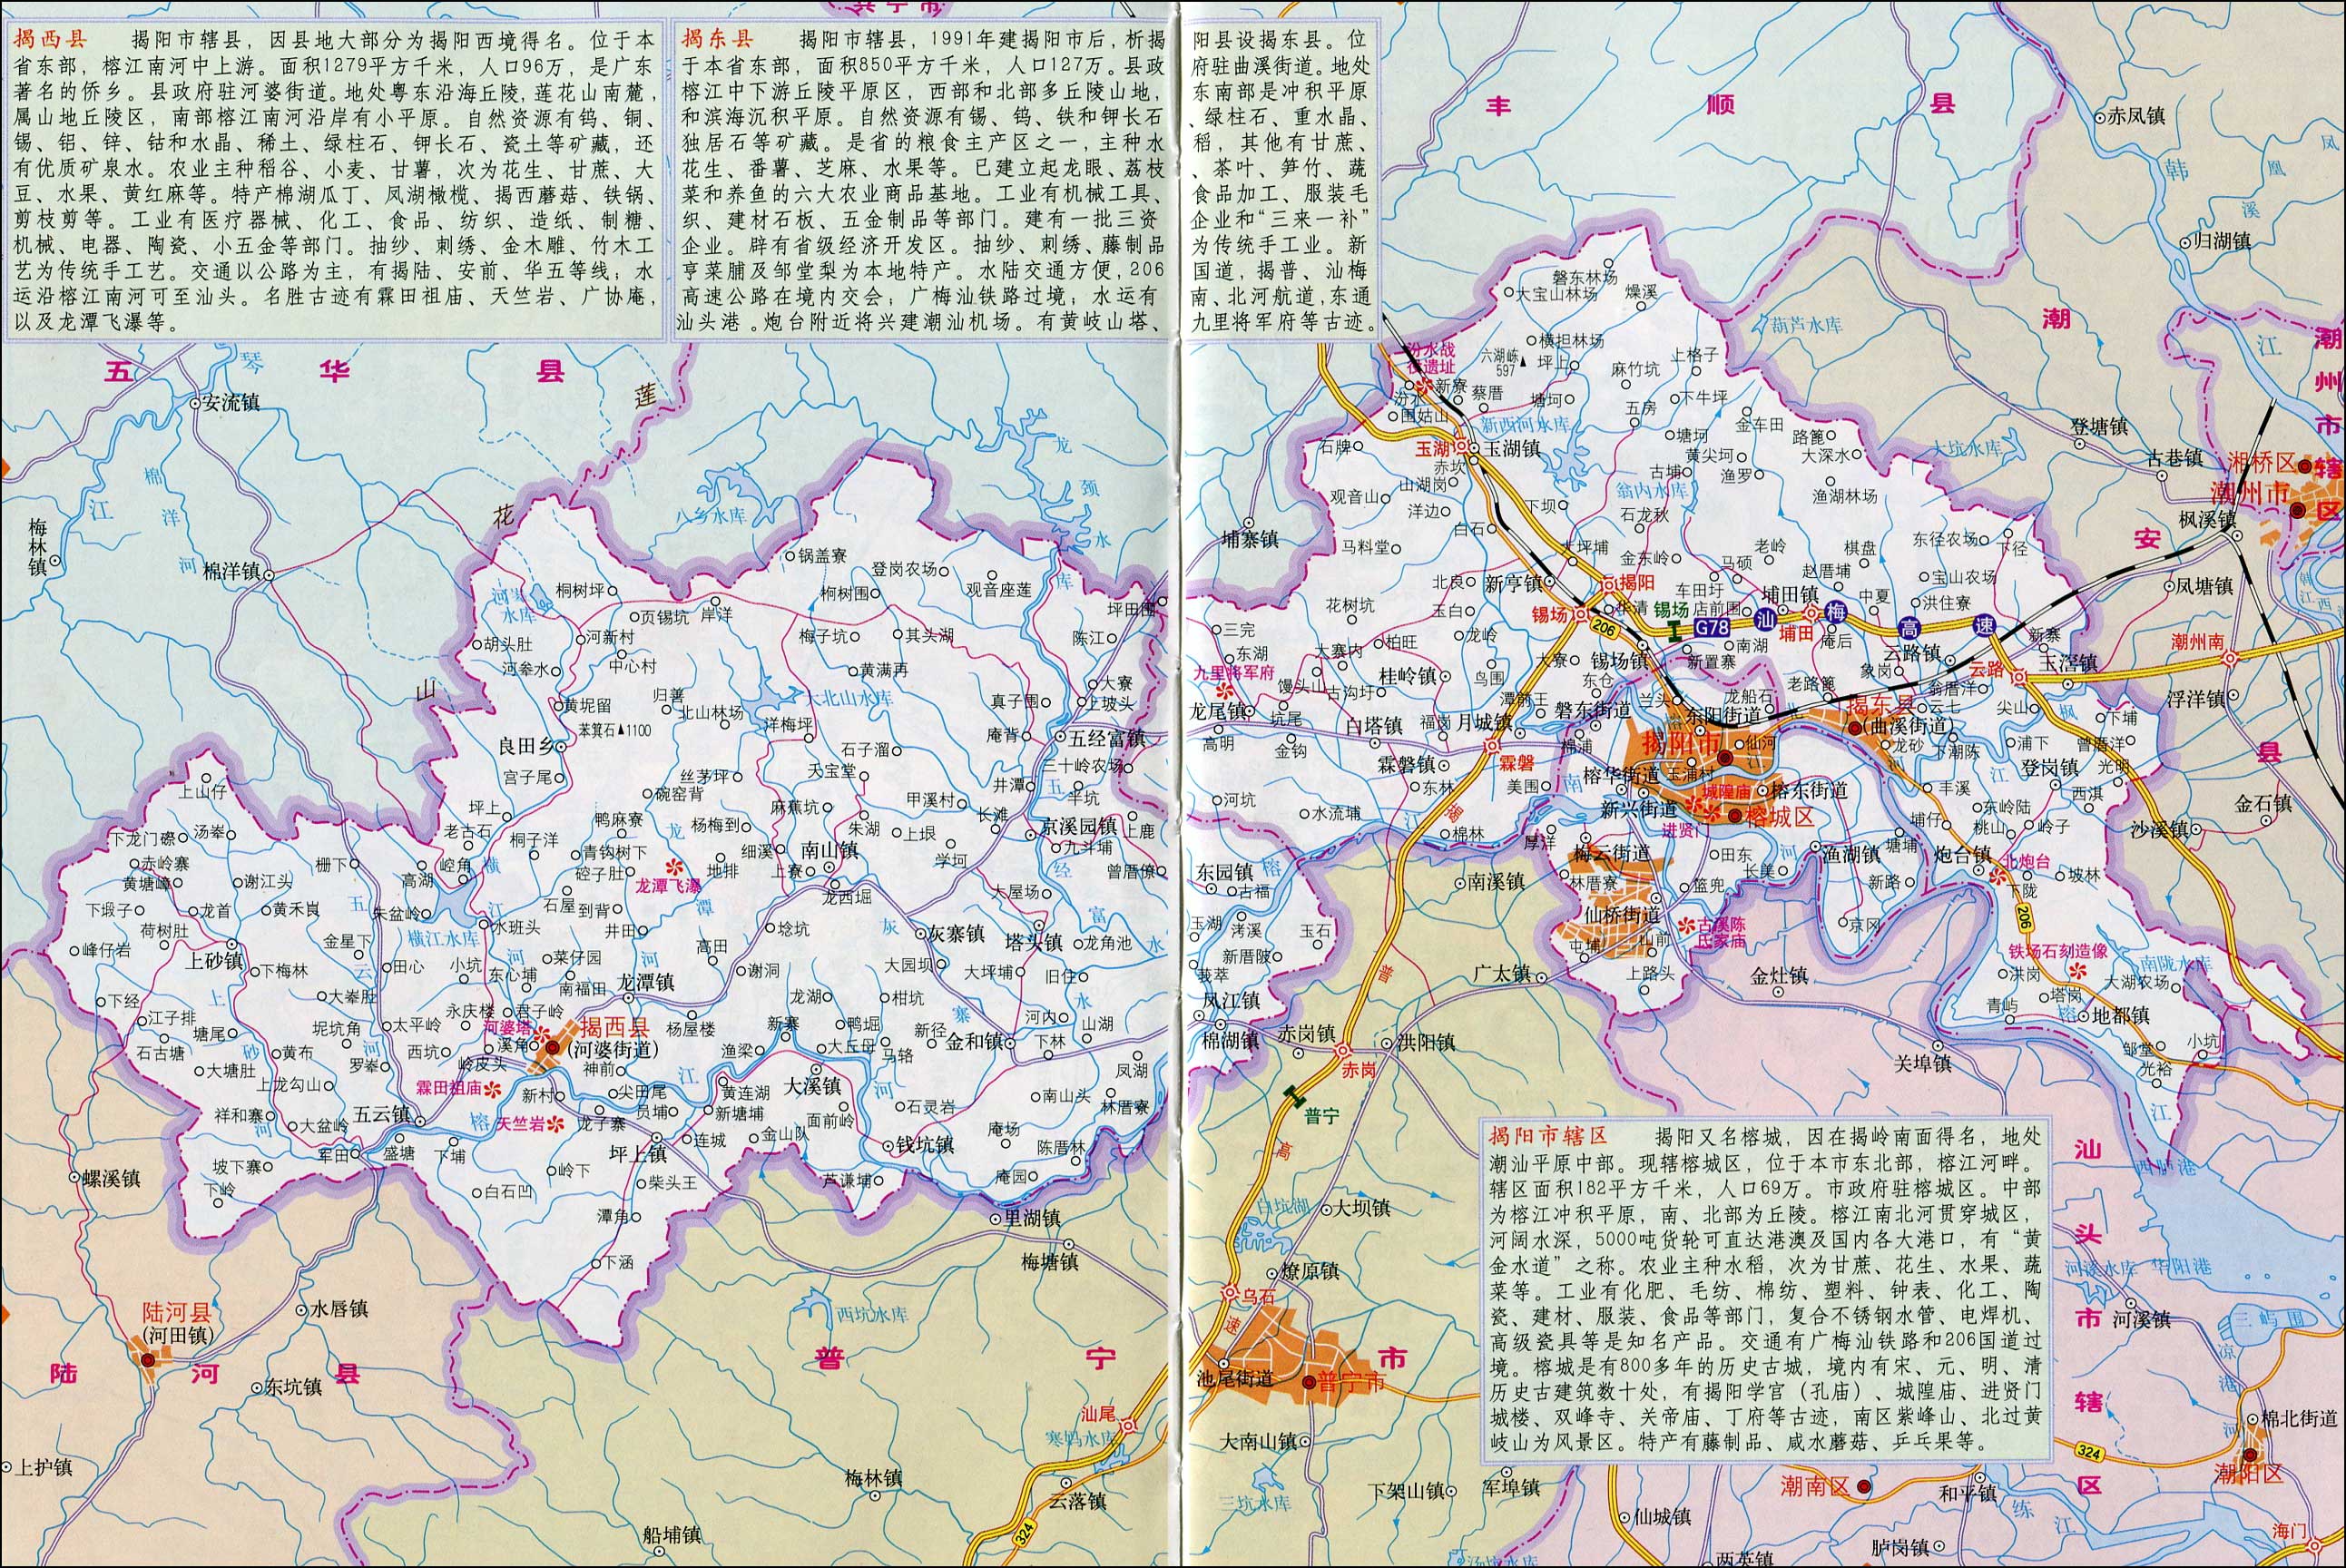 揭阳市辖区,西县,揭东县_揭阳市地图查询